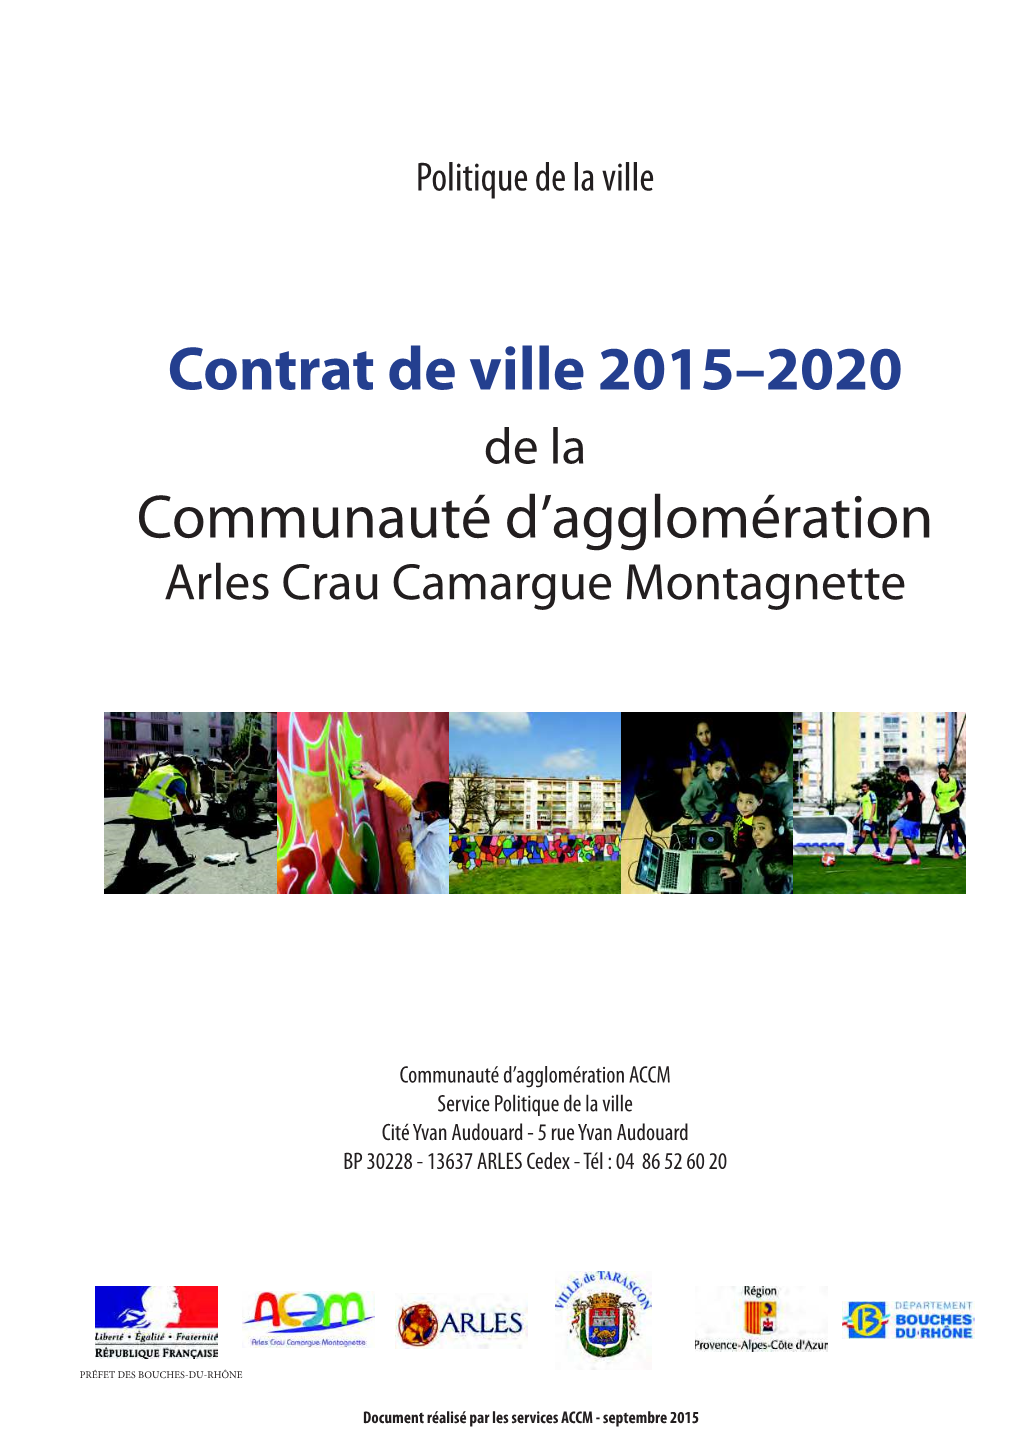 CV De La CA Arles Crau Camargue Montagnette (ACCM)